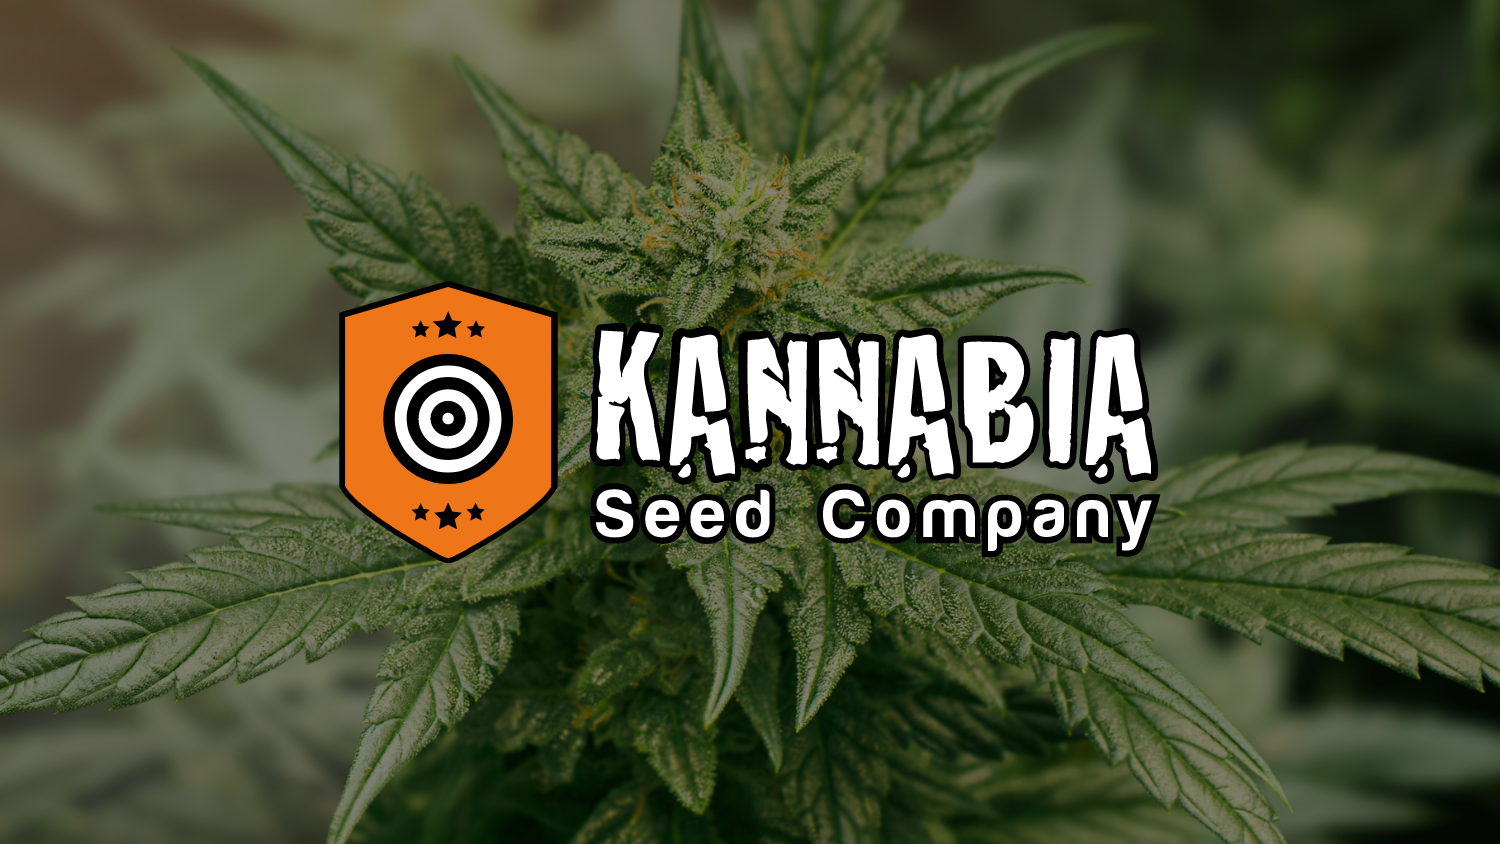 Grow-Deals heißt Kannabia Seeds willkommen: Eine Partnerschaft, die Qualität und Vielfalt verspricht